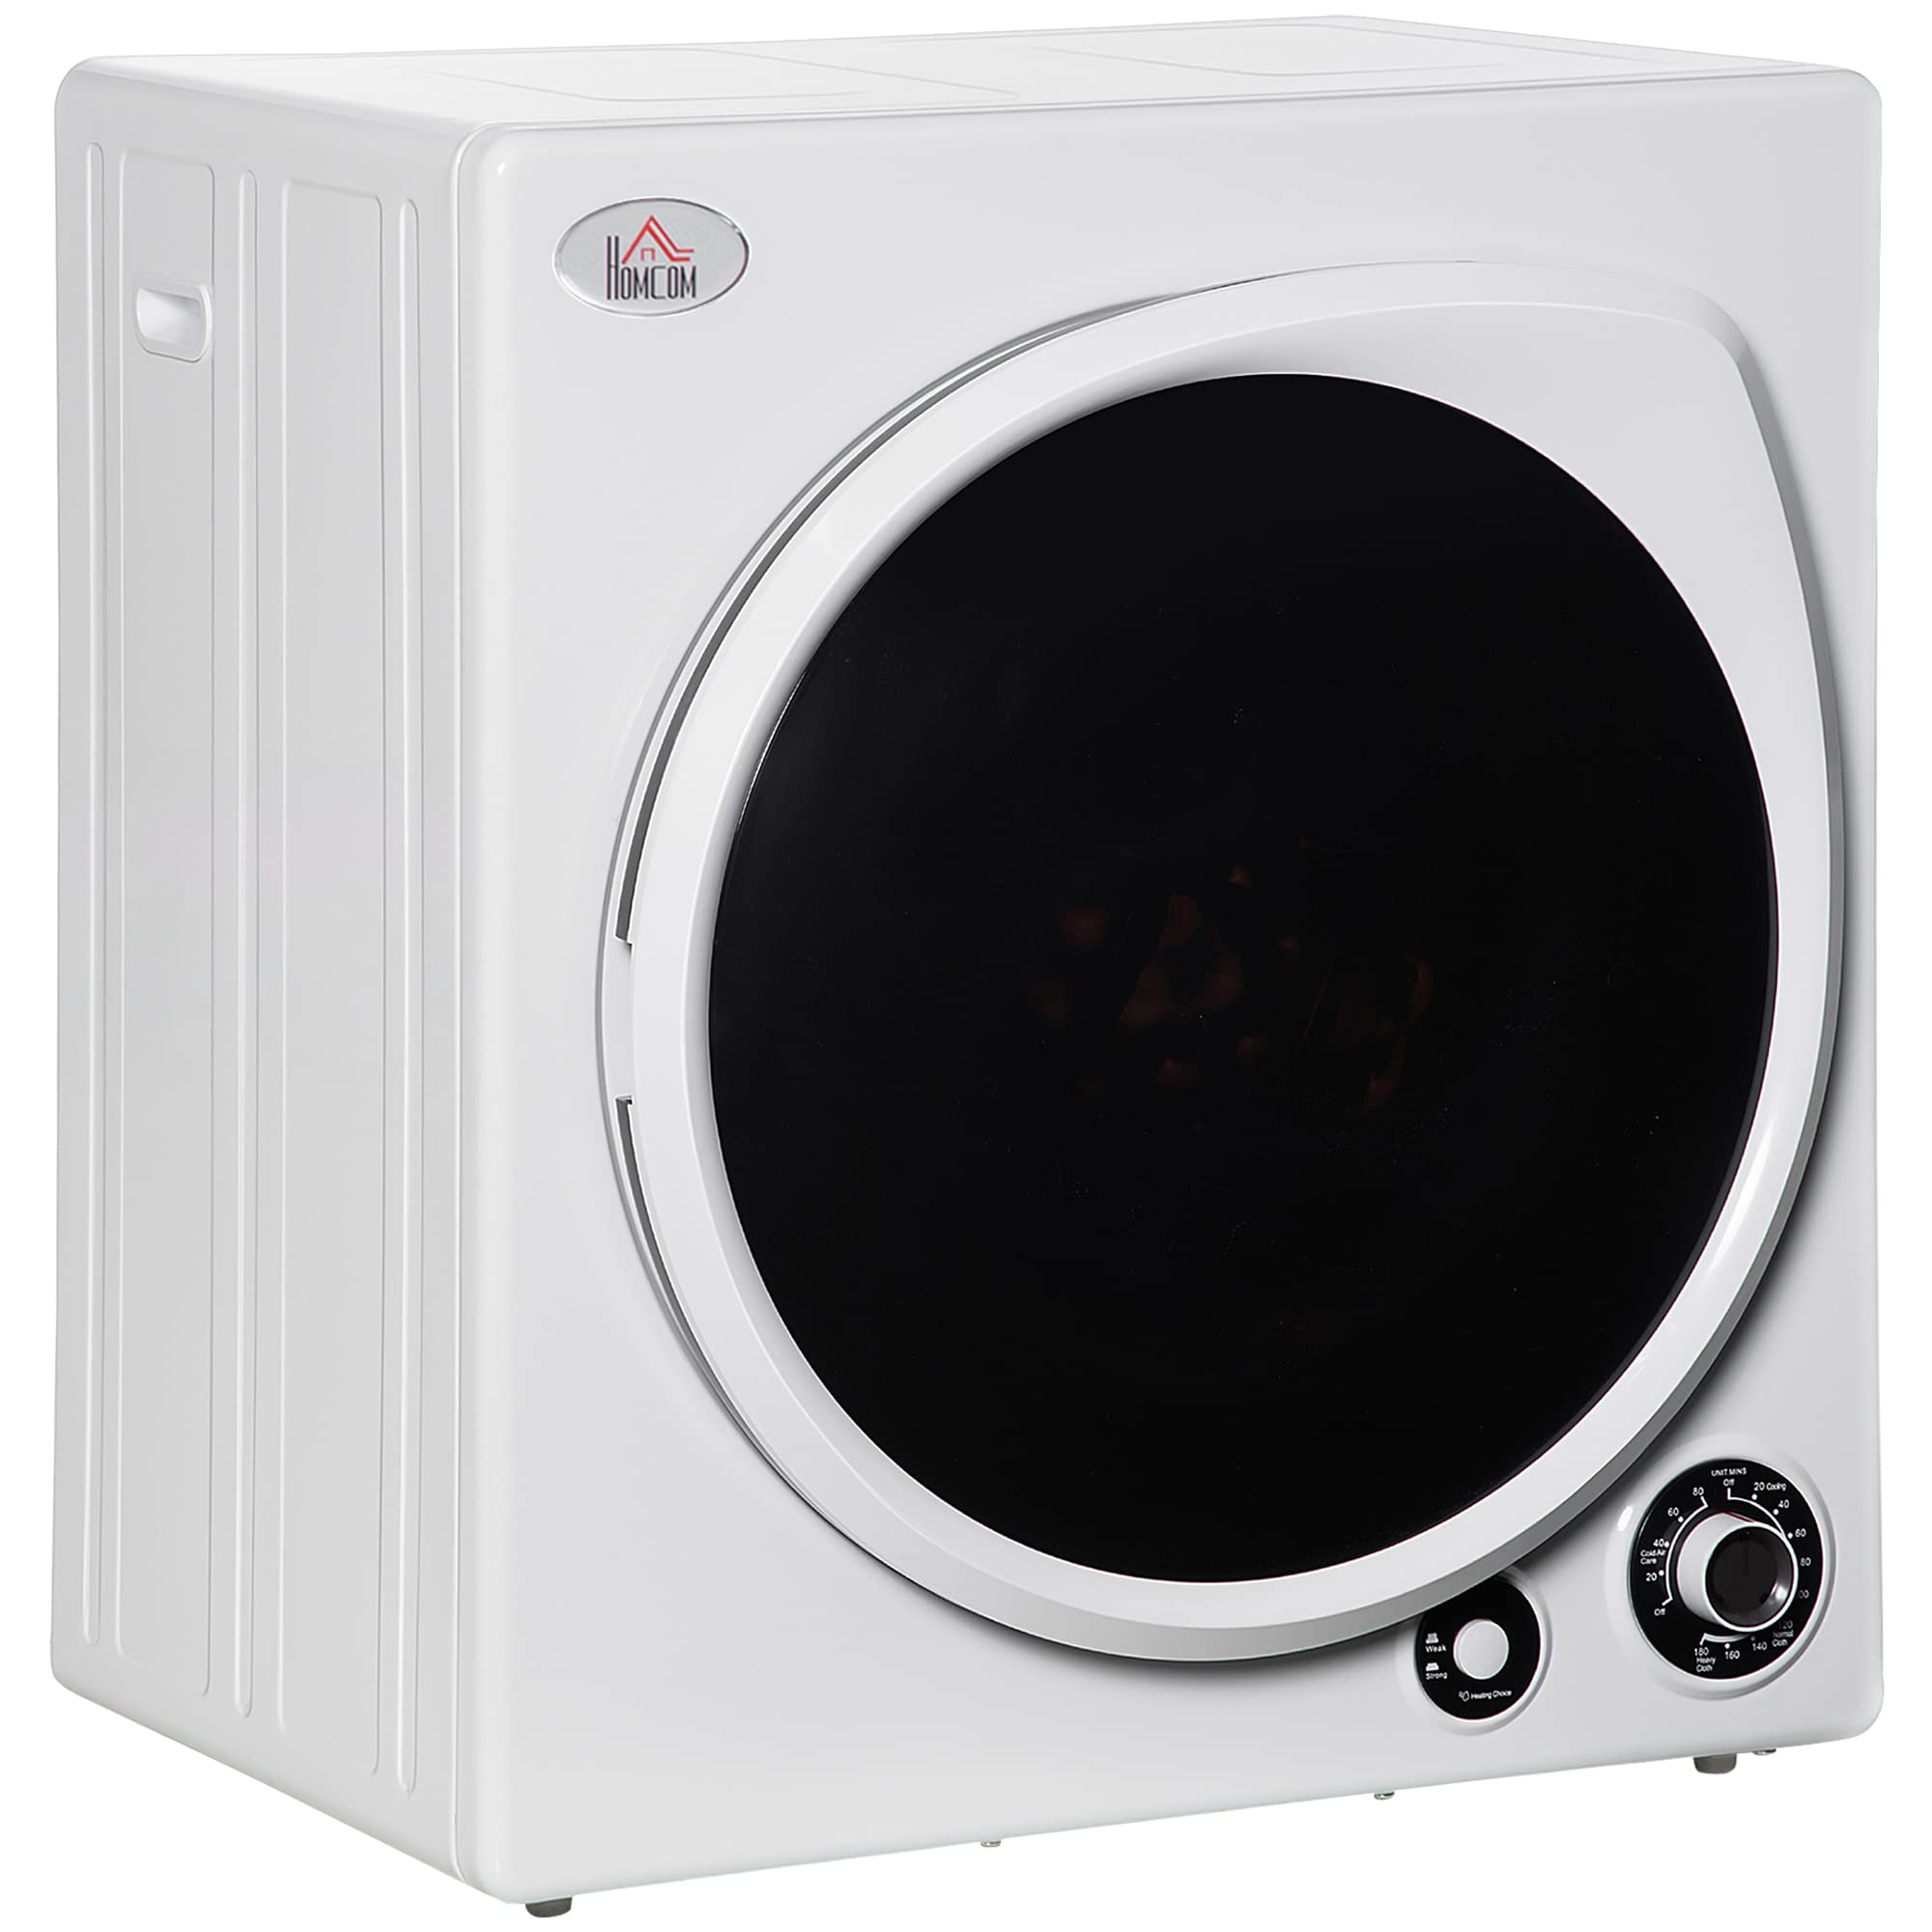 HomCom 自動乾燥機、1350W 3.22 Cu。フォート5つの乾燥モードとステンレス鋼浴槽を備えたポータブル衣類乾燥機、アパートまたは寮用、ホワイト